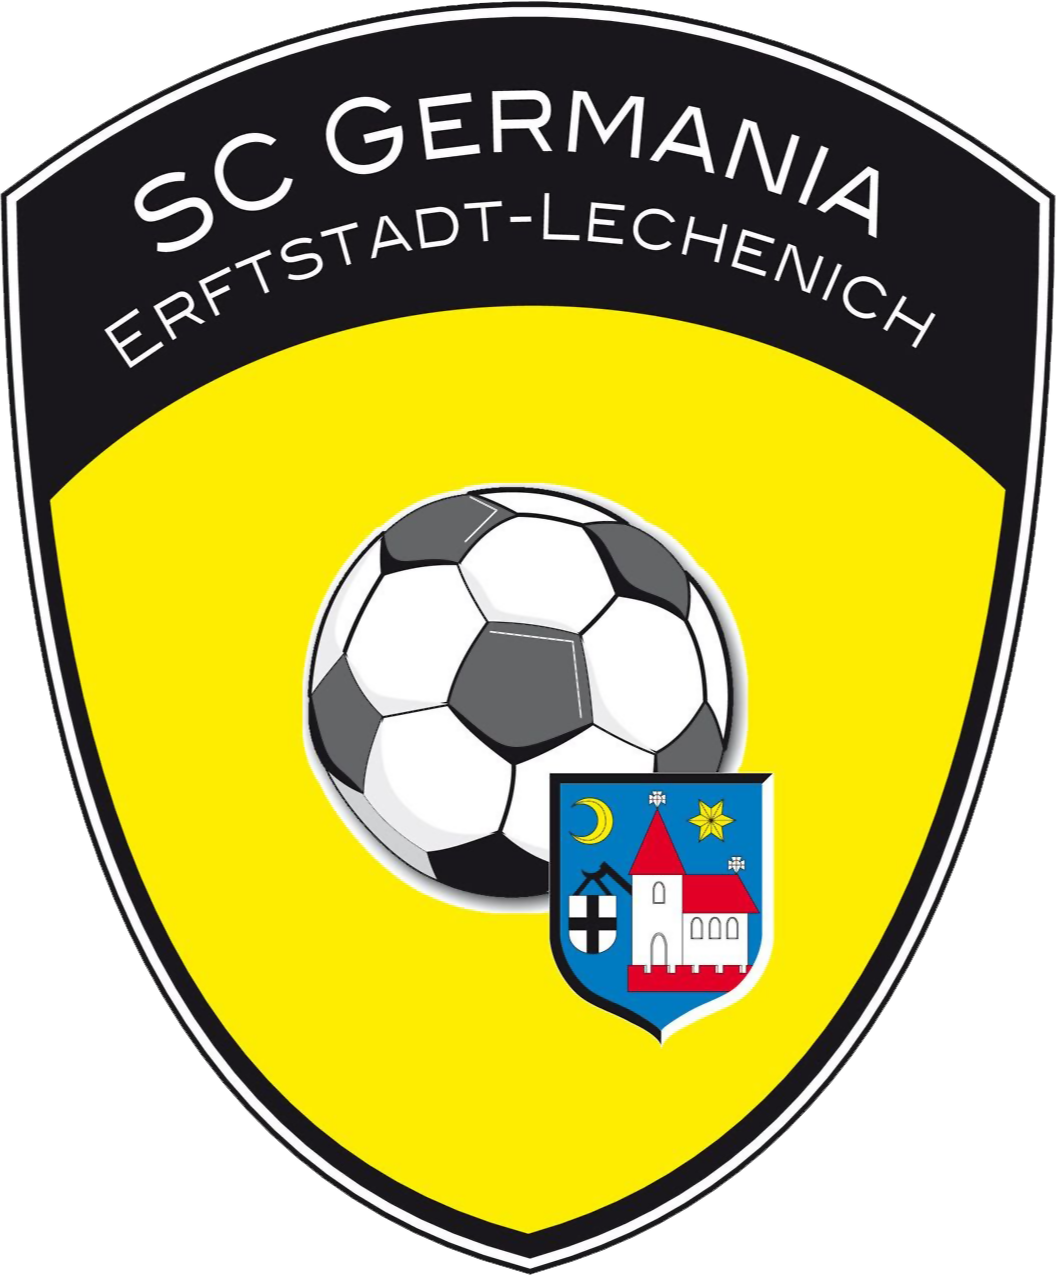 SC Germania Erftstadt Lechenich